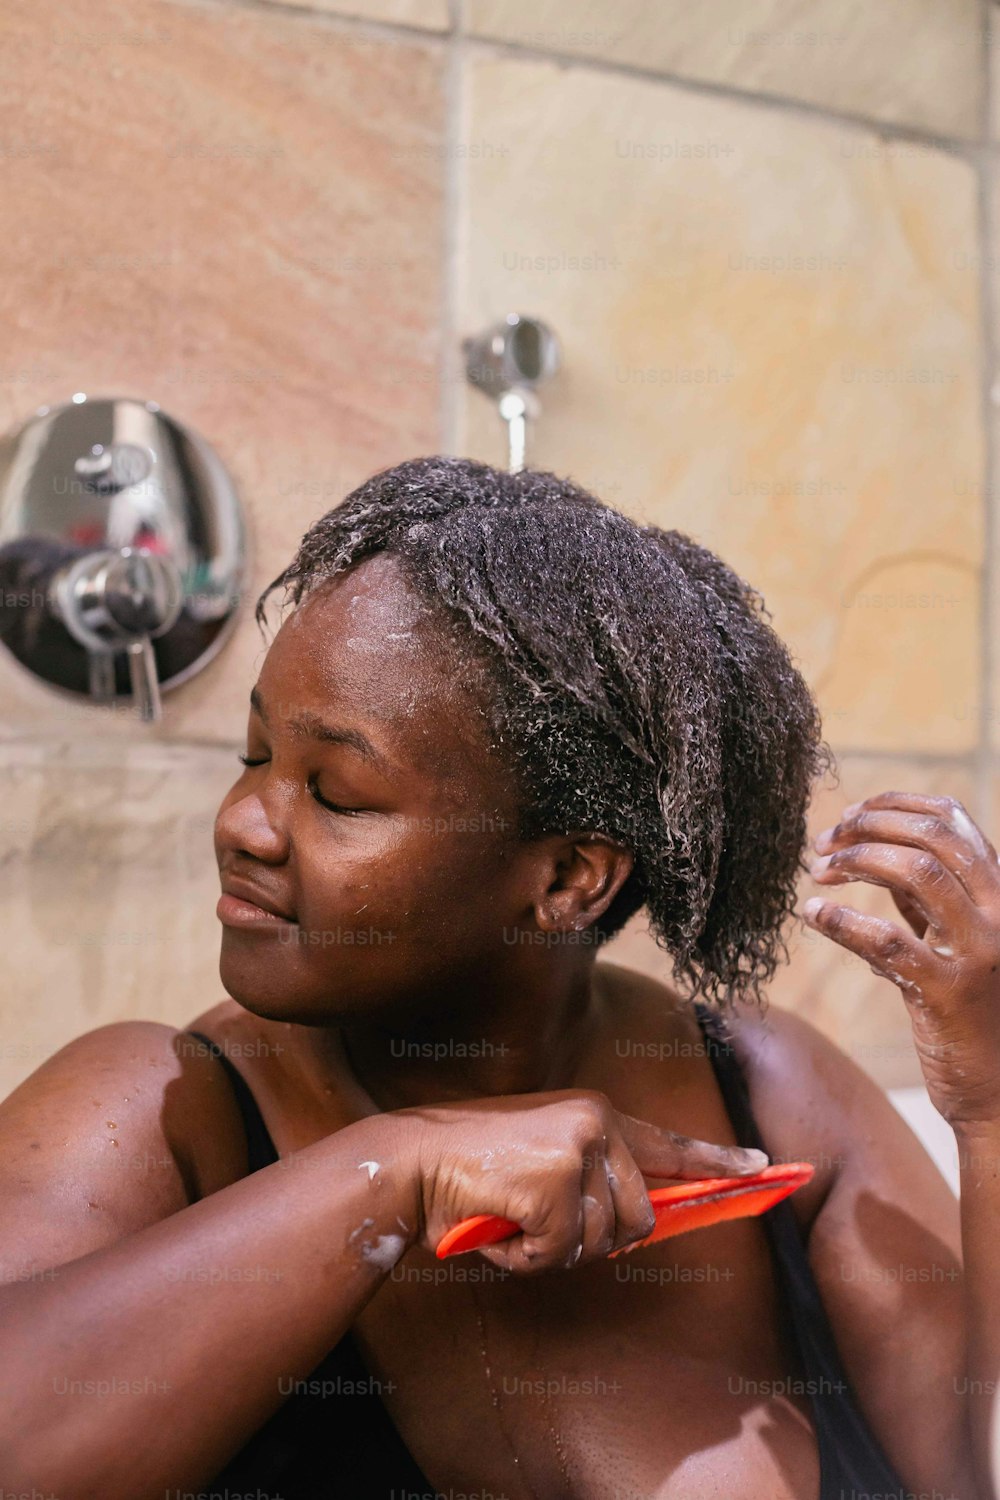 Una donna si sta spazzolando i capelli sotto la doccia